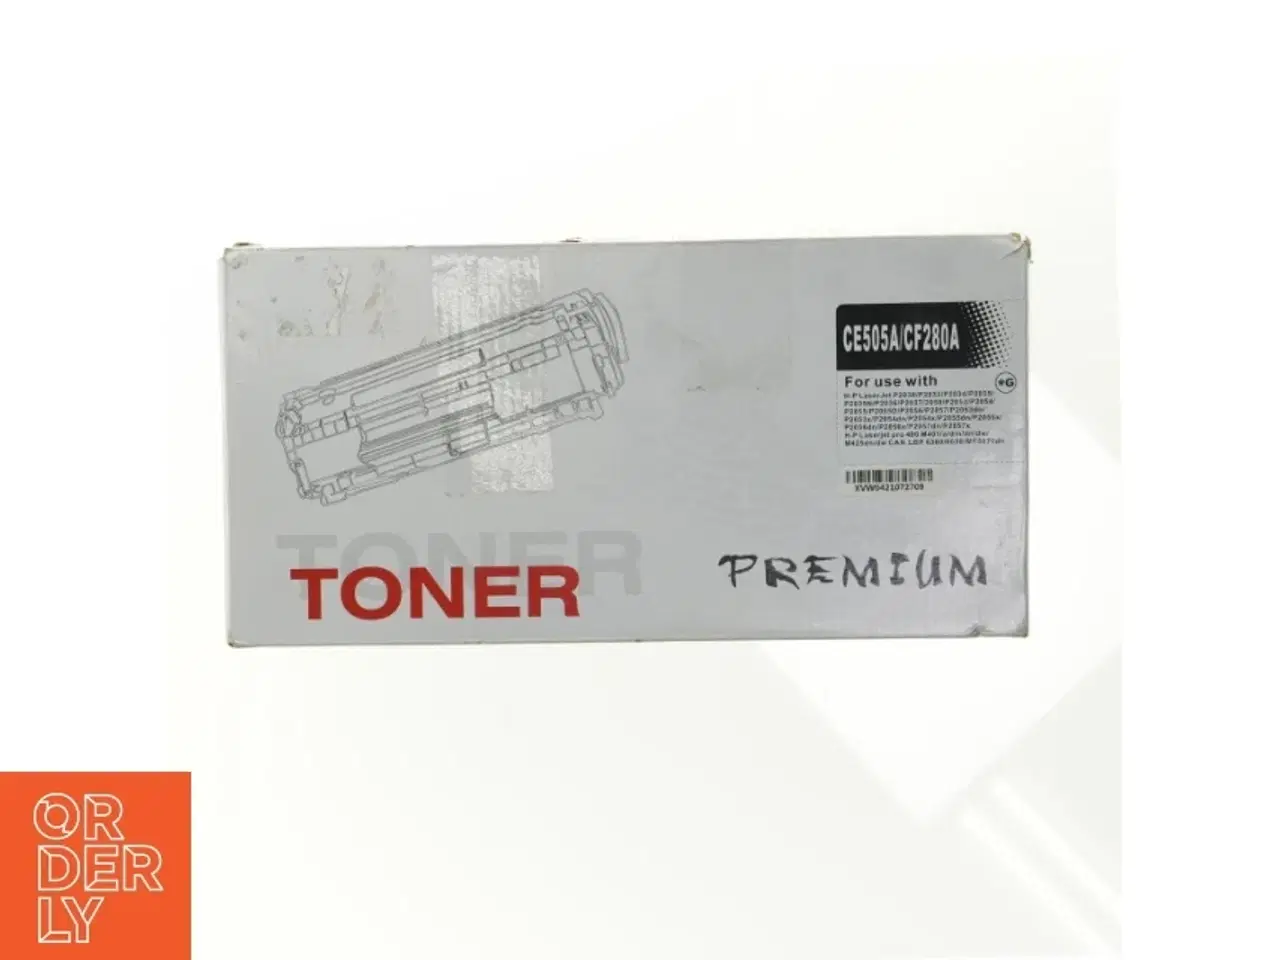 Billede 1 - Toner til HP LASERJET printer, CE505A/CF280A fra Toner I UBRUDT ORIGINAL EMBALLAGE (str. 32 x 16 x 10 cm)